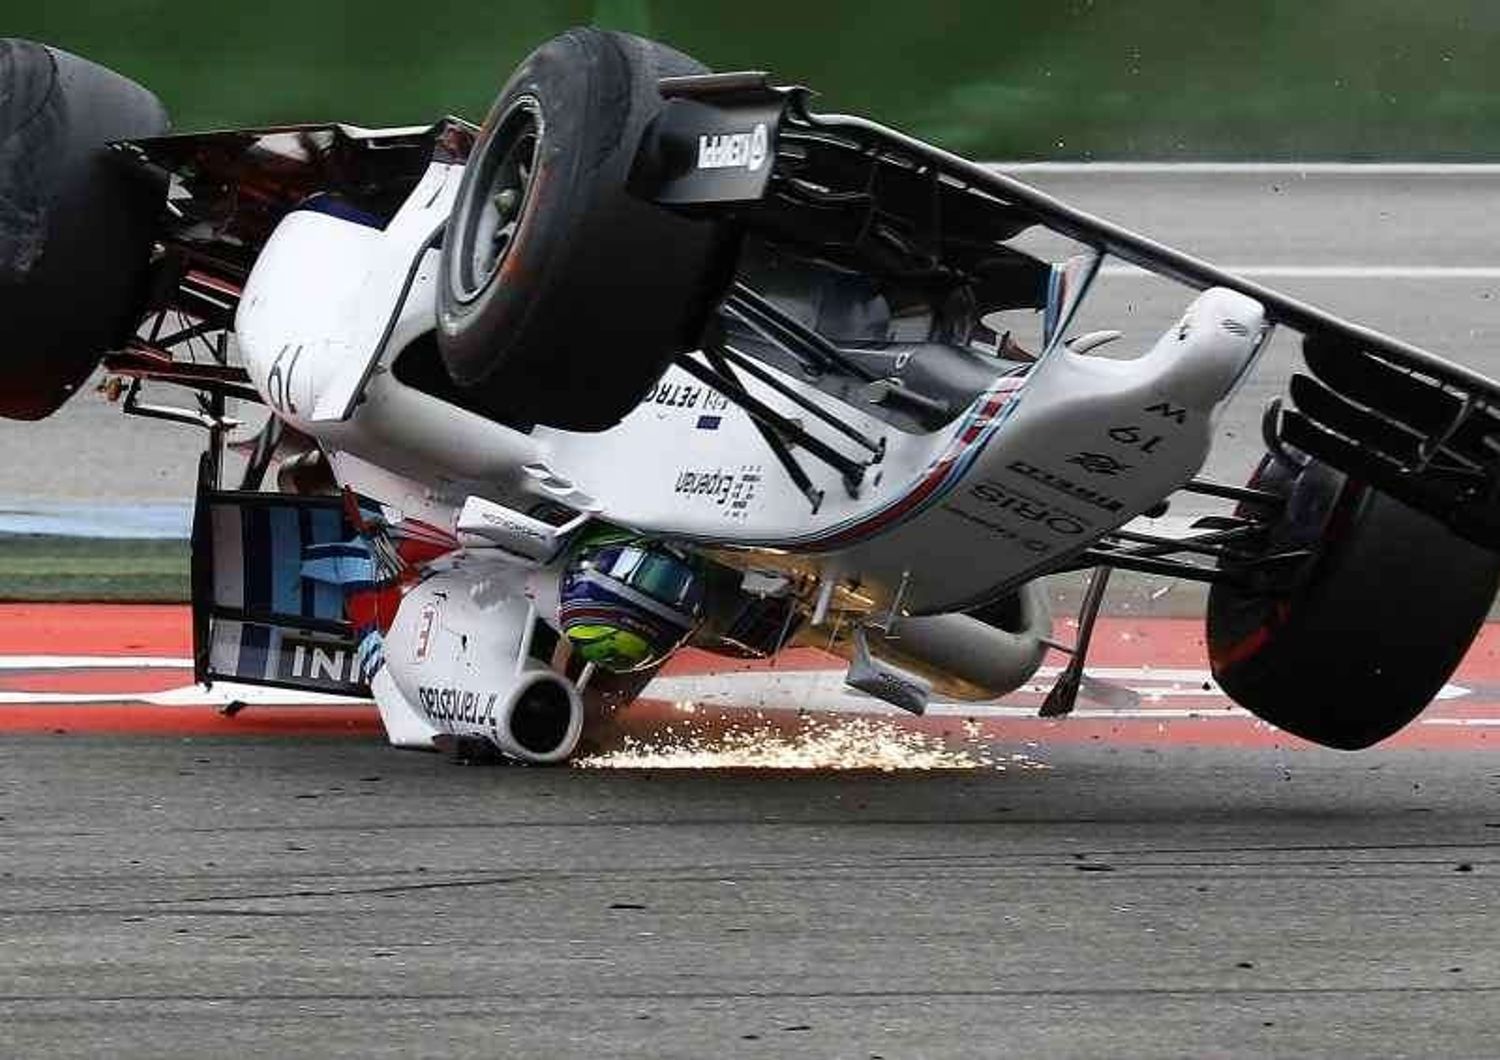 F. 1: Gp Germania, Massa si cappotta alla prima curva